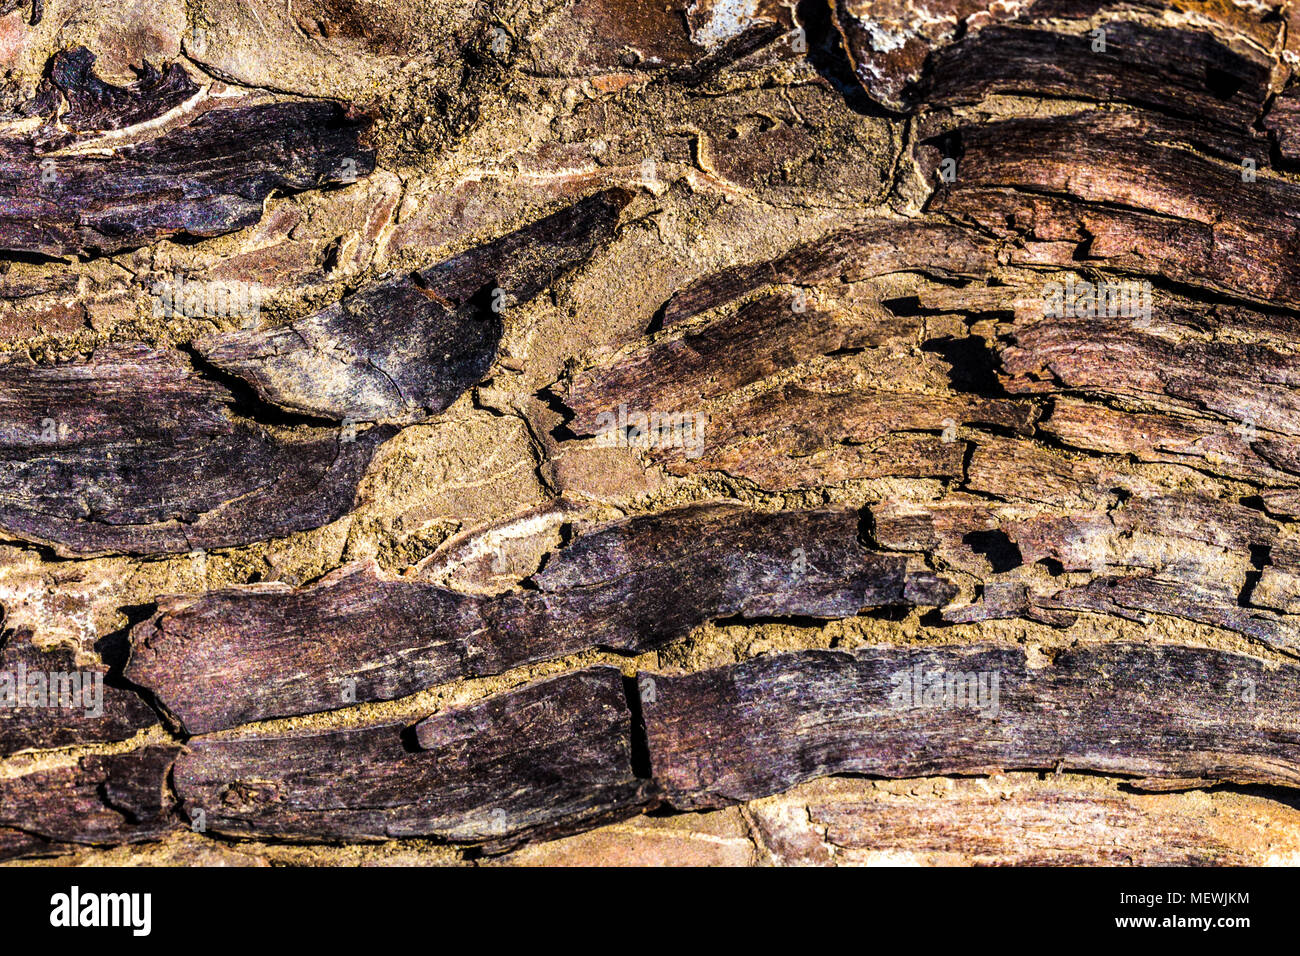 bark background image, photo close-up, wood texture Stock Photo